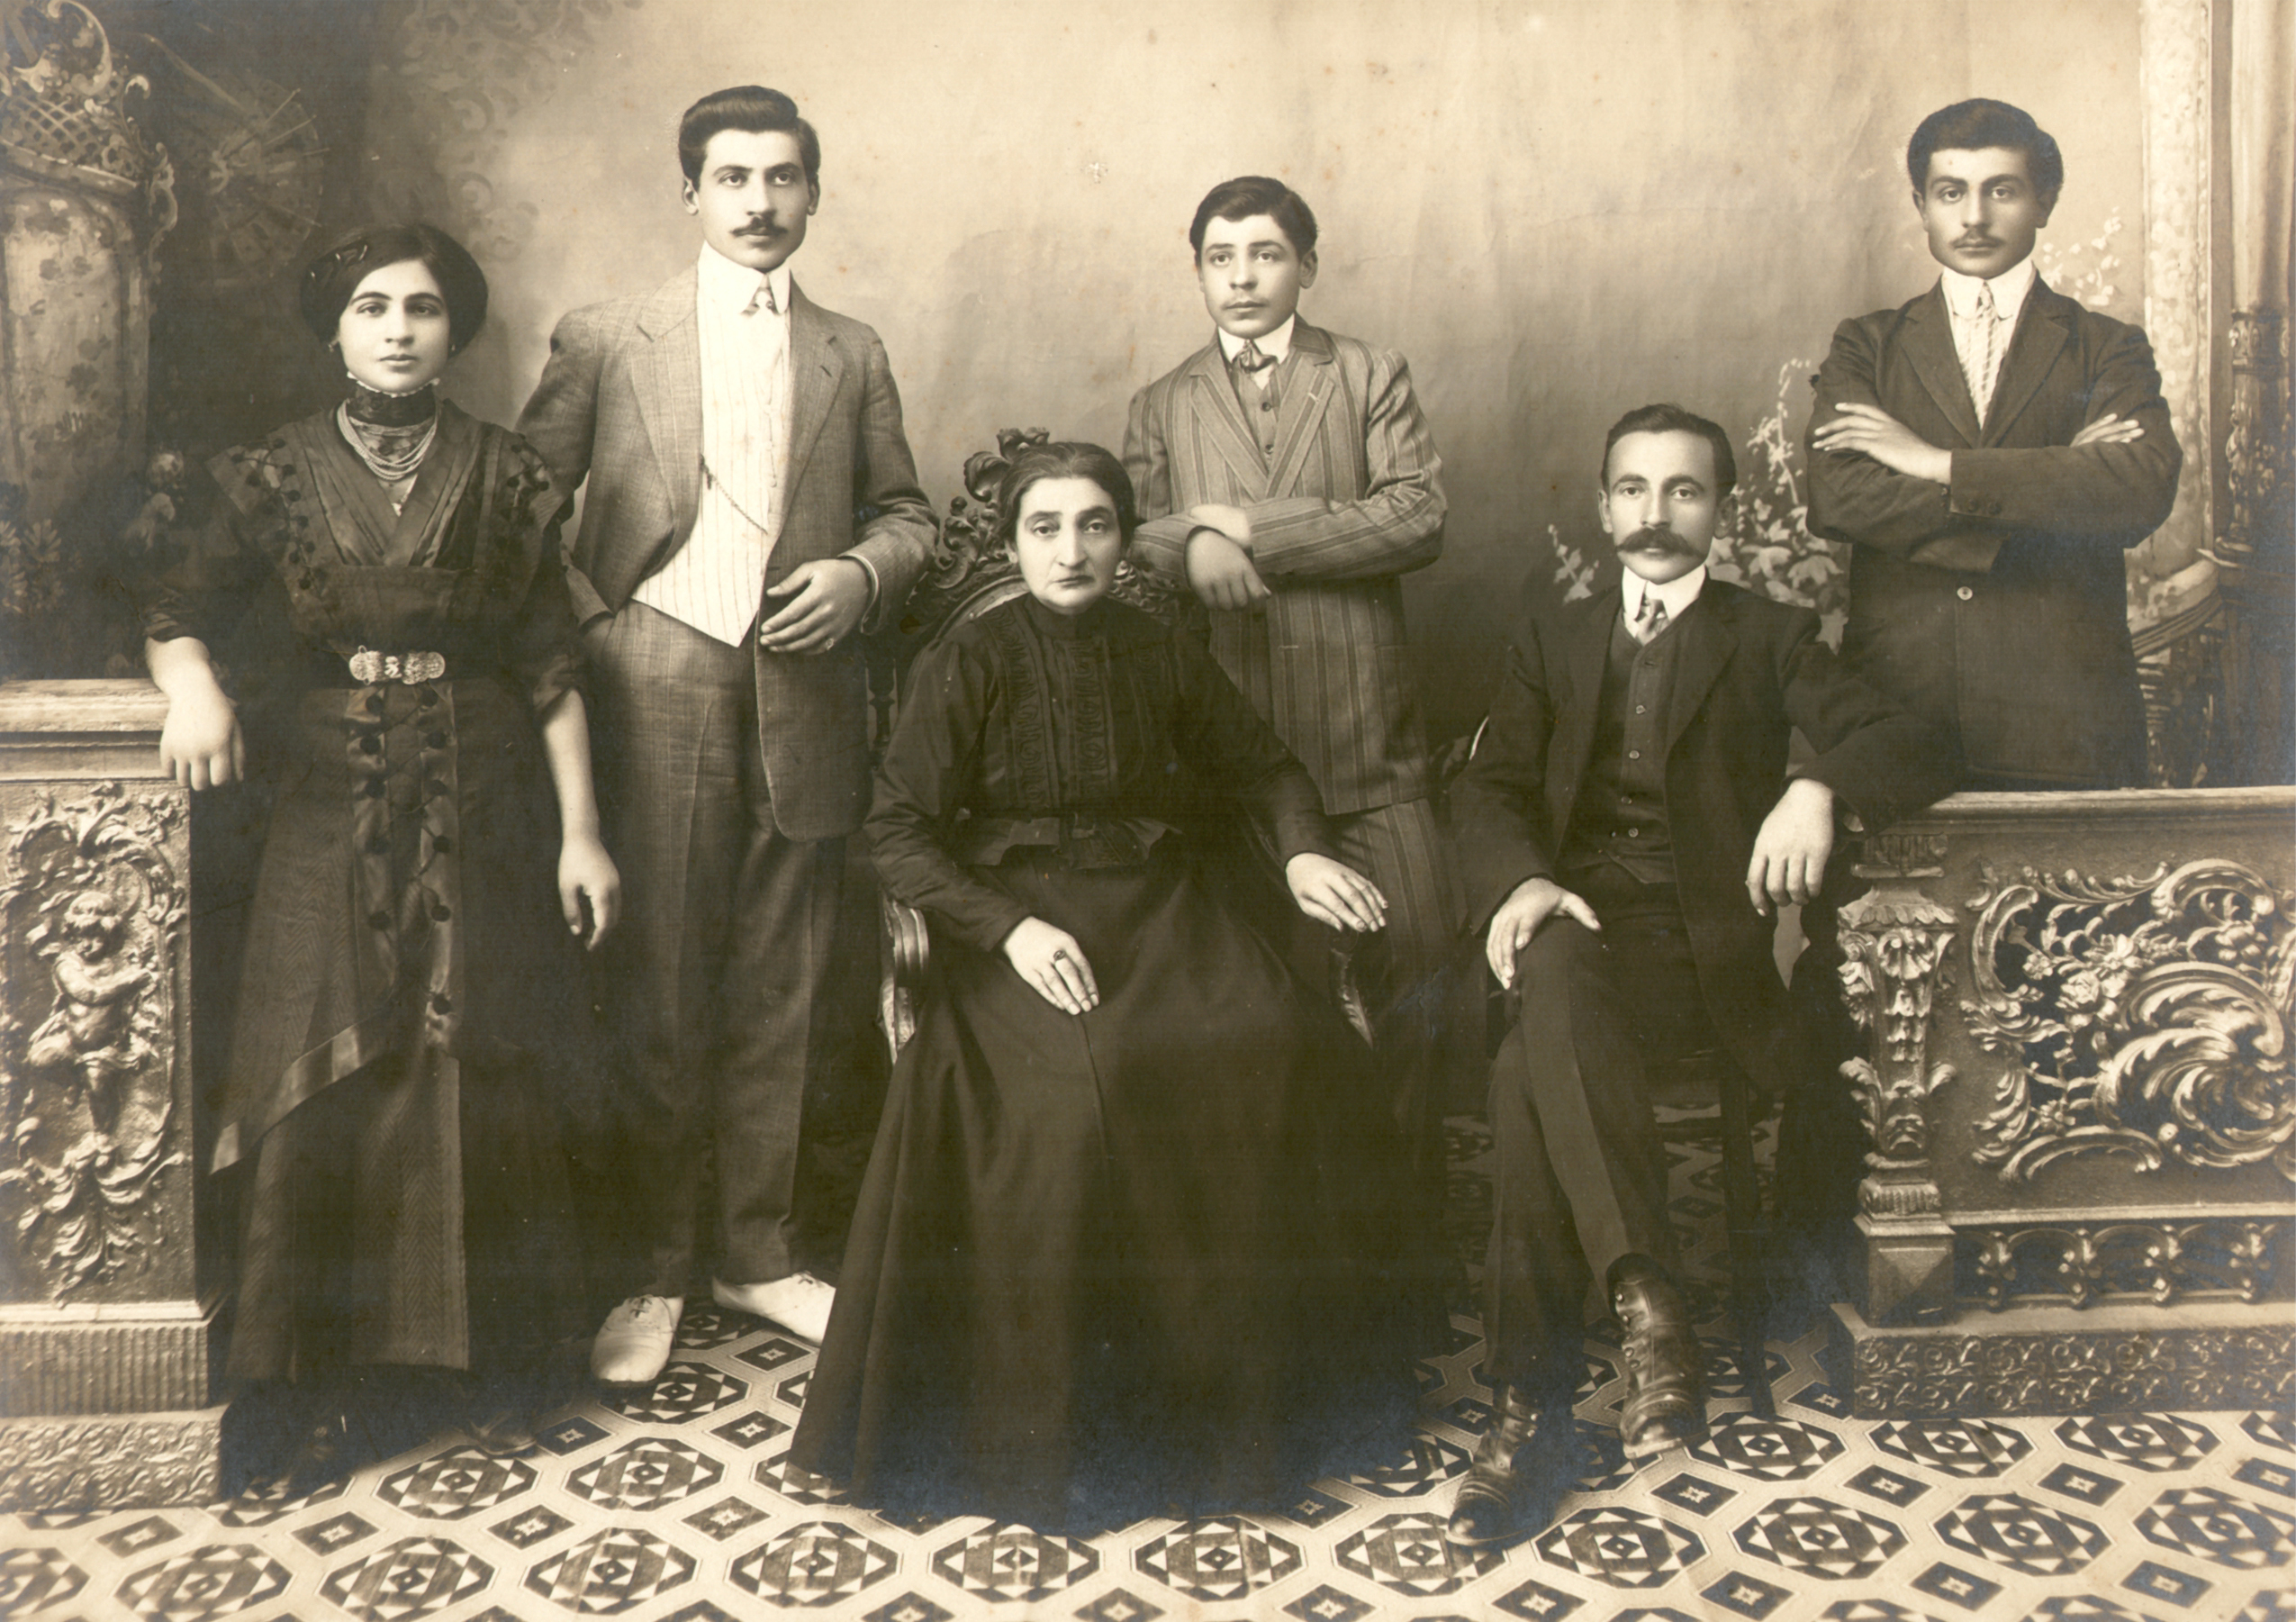 Տիկին Ֆիլոր Նշանեան (ծնեալ Դանիէլեան) եւ զաւակները։ Կանգնած, ձախից աջ՝ Զարուհի, Օննիկ, Բարսեղ, Մելքիս եւ Սեփոնիկ (նստած) Նշանեաններ, Կոնիա, 1911 թ.։